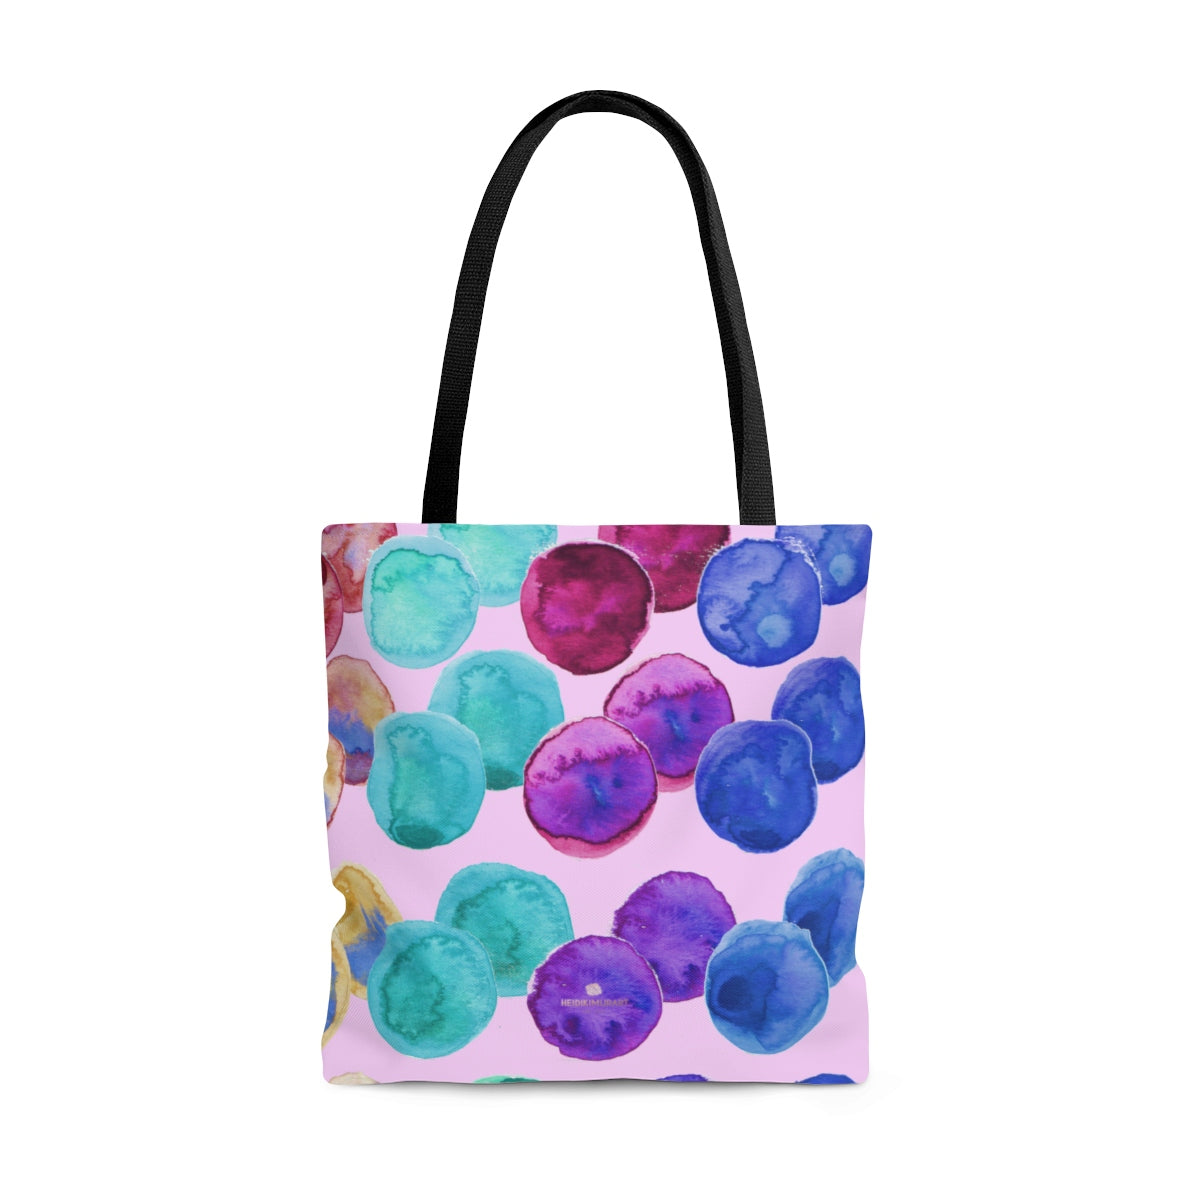 Light Pink Watercolor Colorful Polka Dots Print Women's Designer Tote Bag - Made in USA-Tote Bag-Large-Heidi Kimura Art LLC